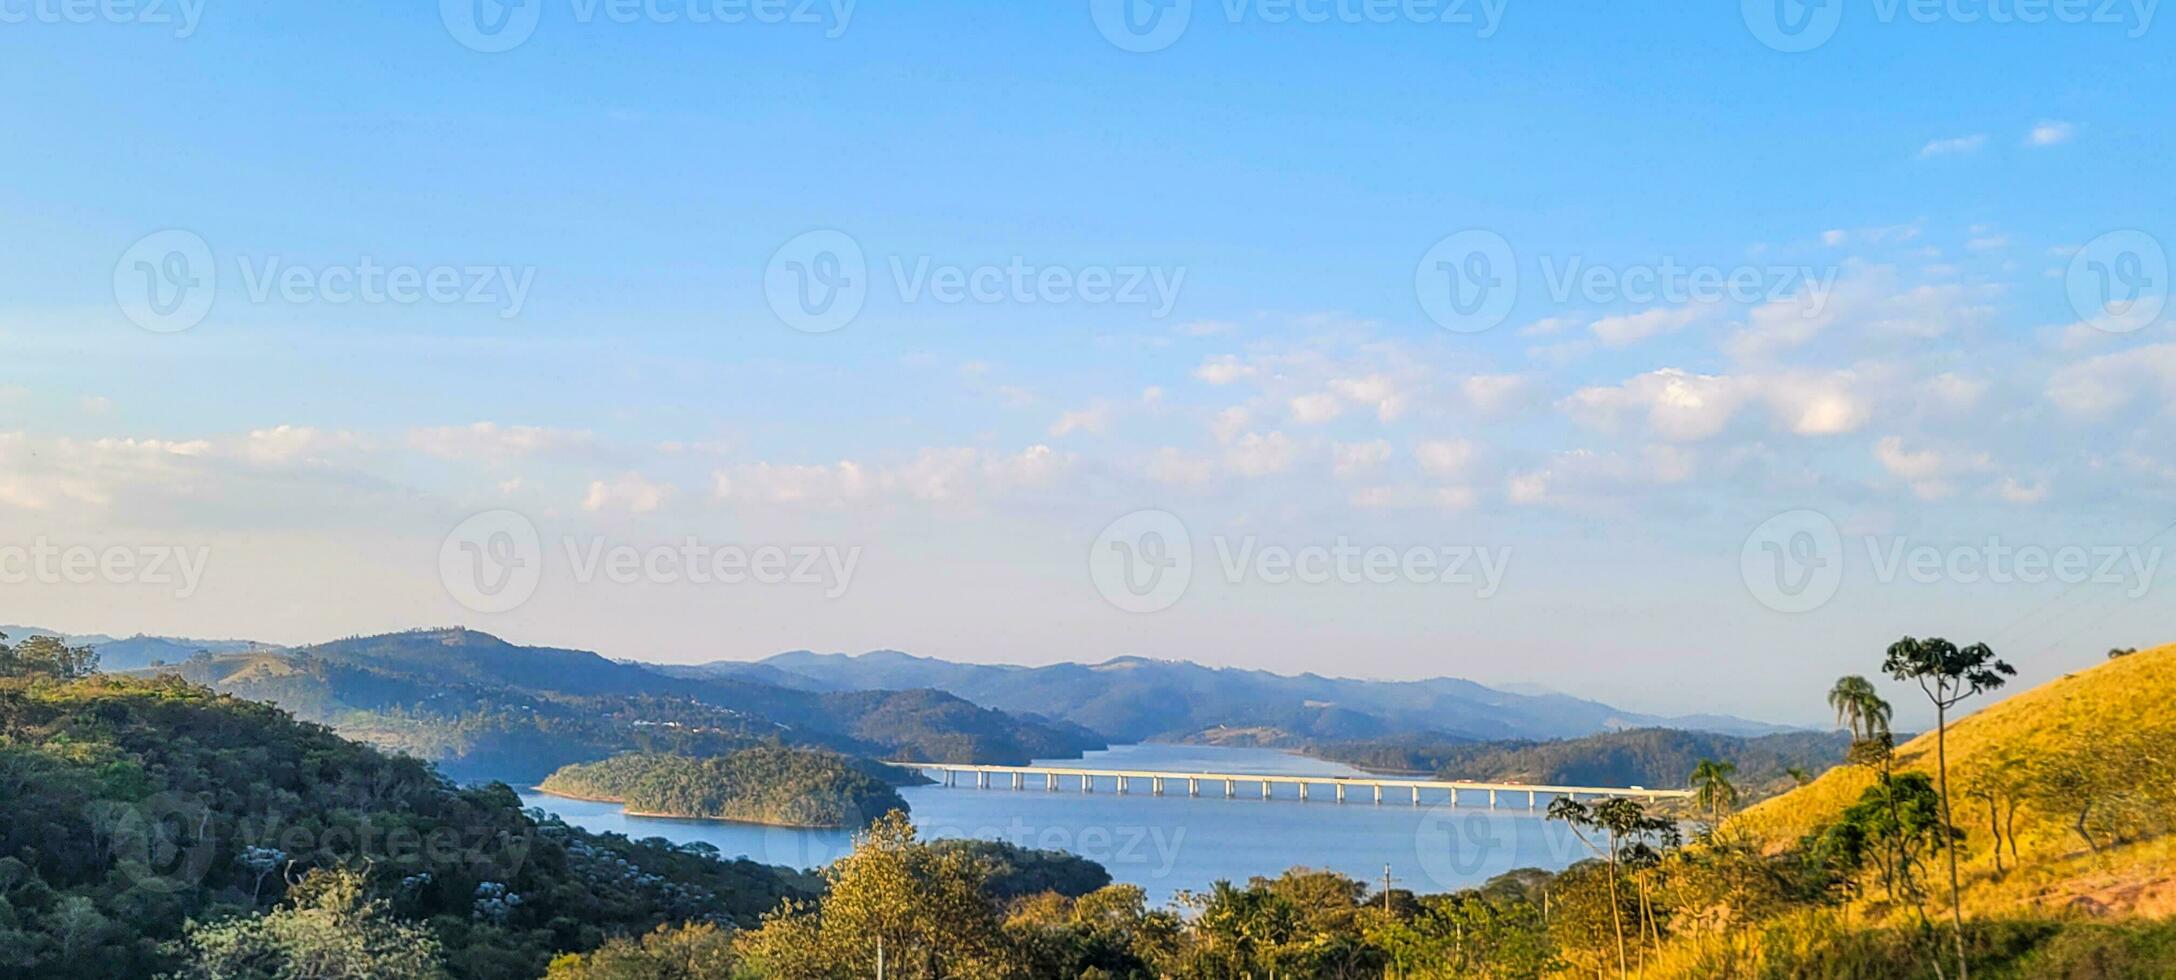 sereno lago en el montañas de Brasil lozano y tranquilo configuración, natural belleza ese encanta. realce tu creatividad con esta maravilloso ver foto